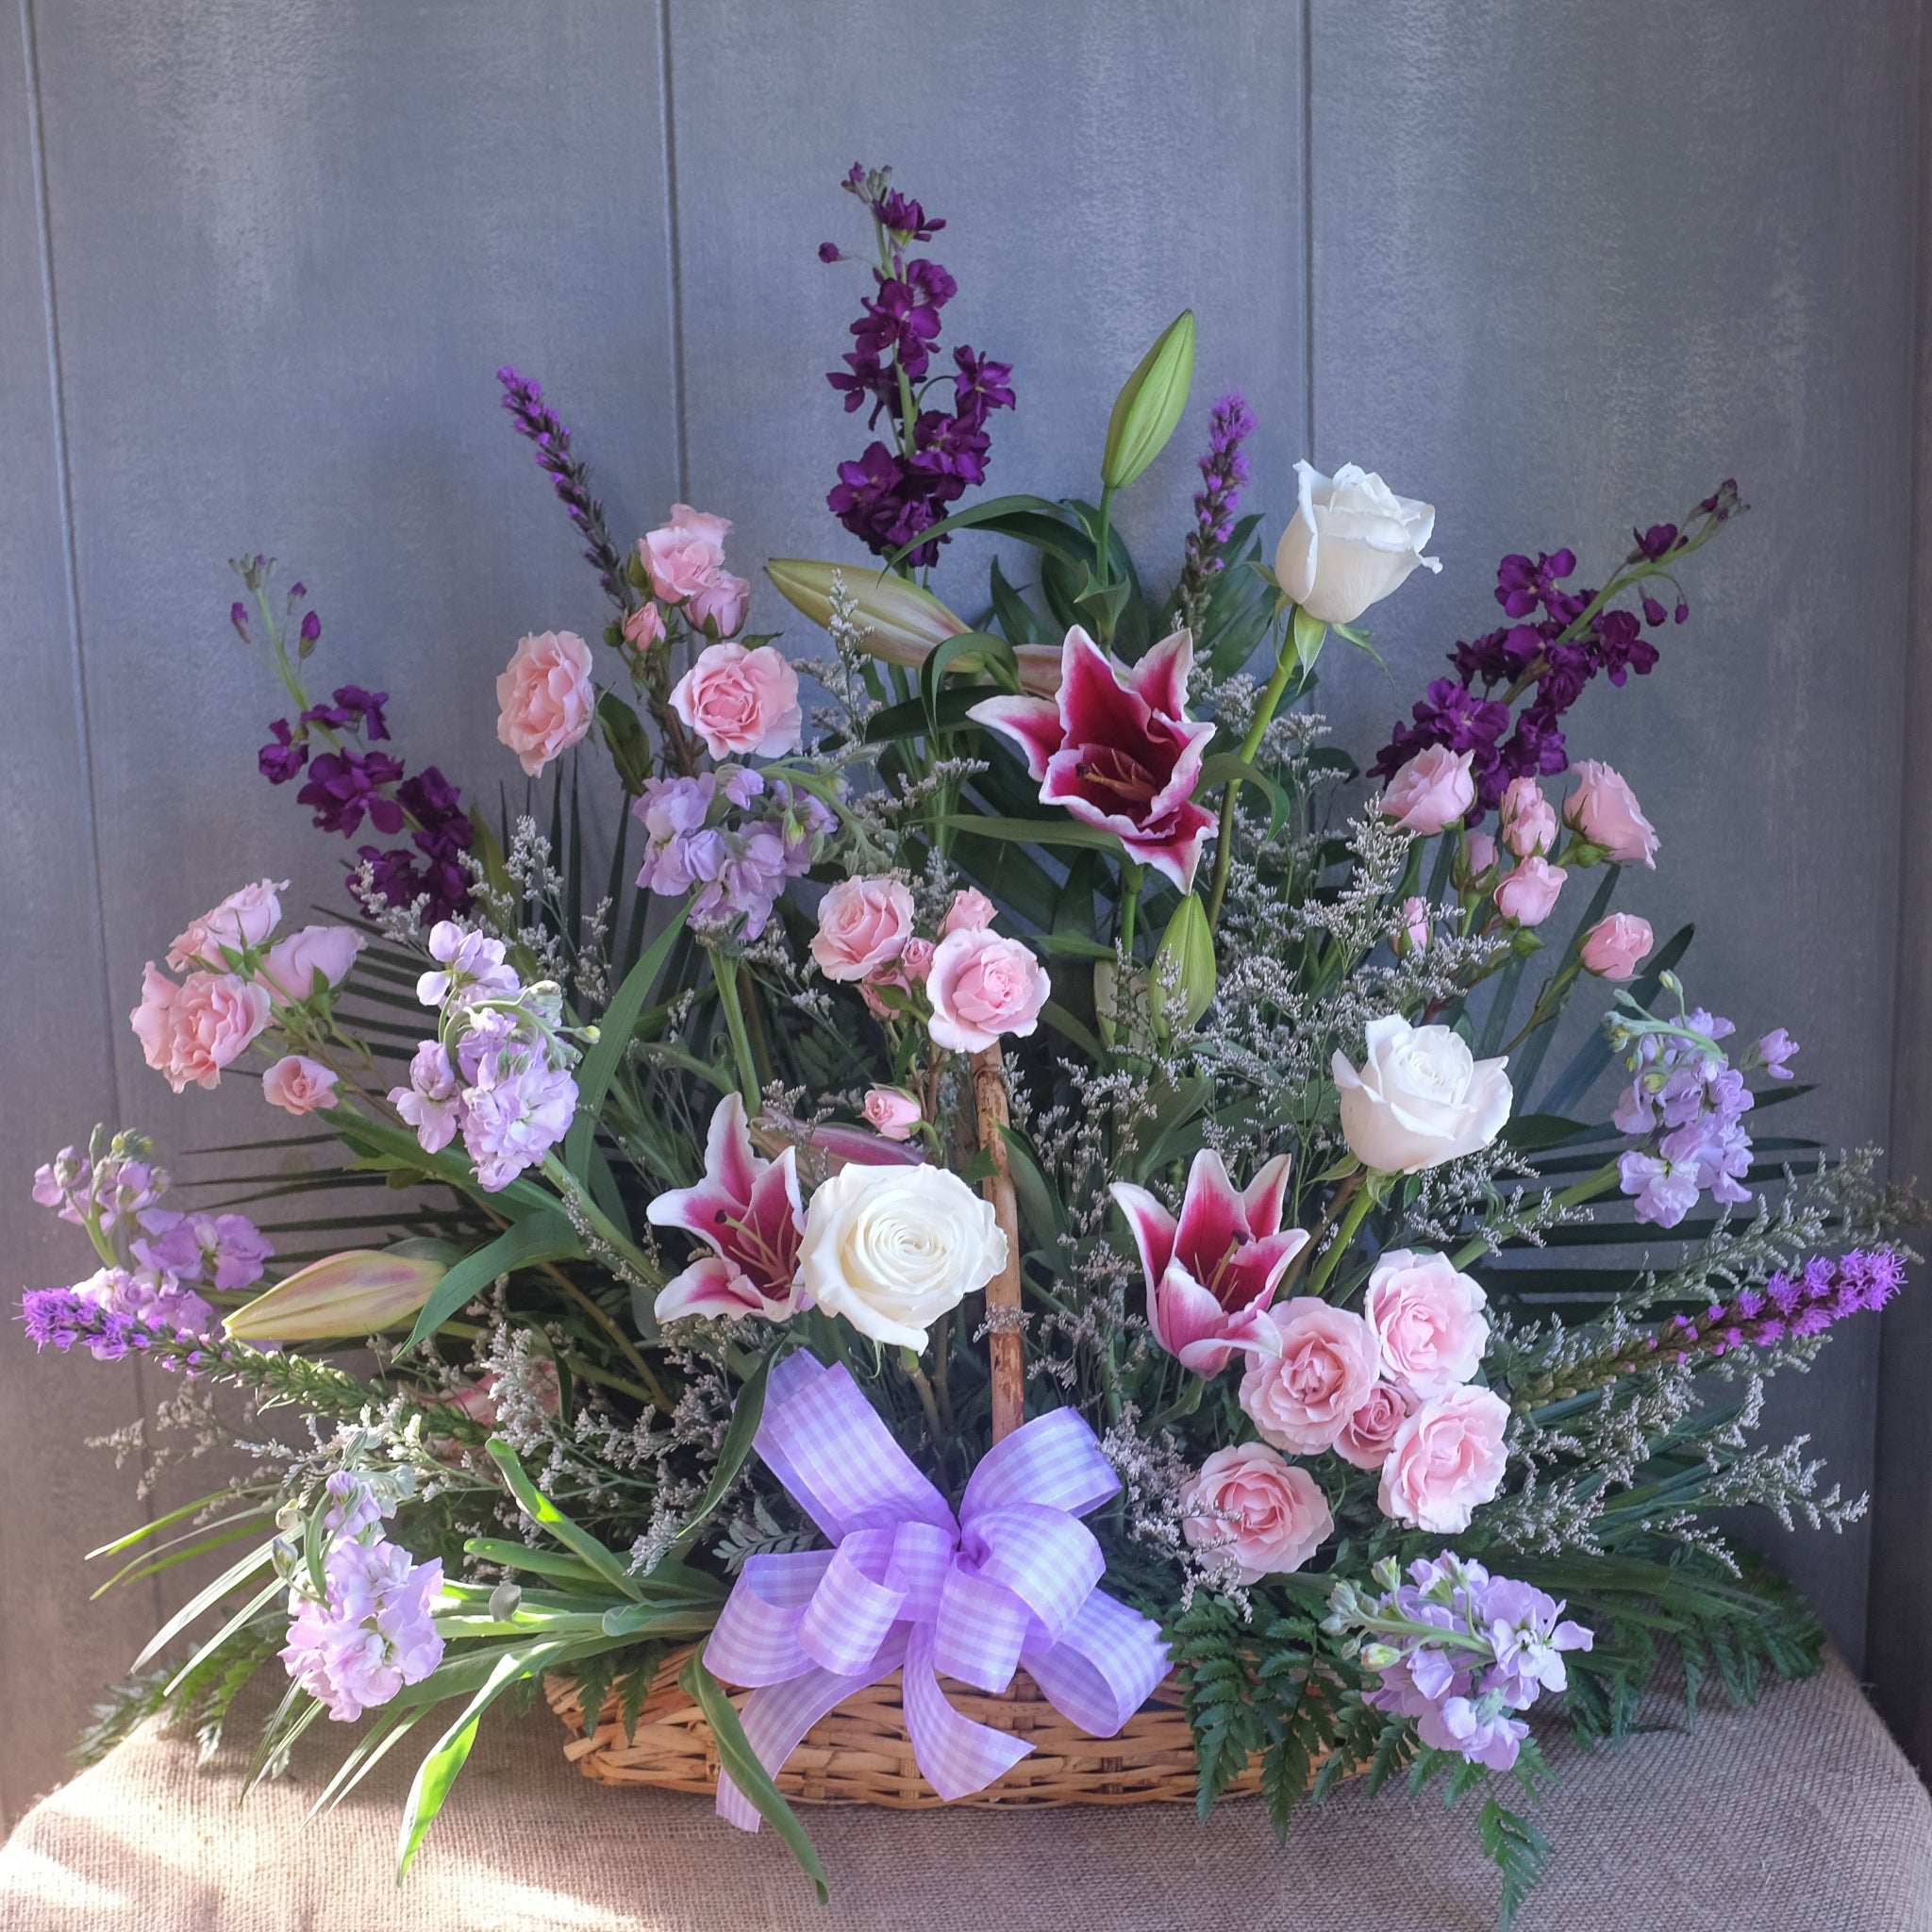 Flower Basket by Michler Florist, Lexington KY.